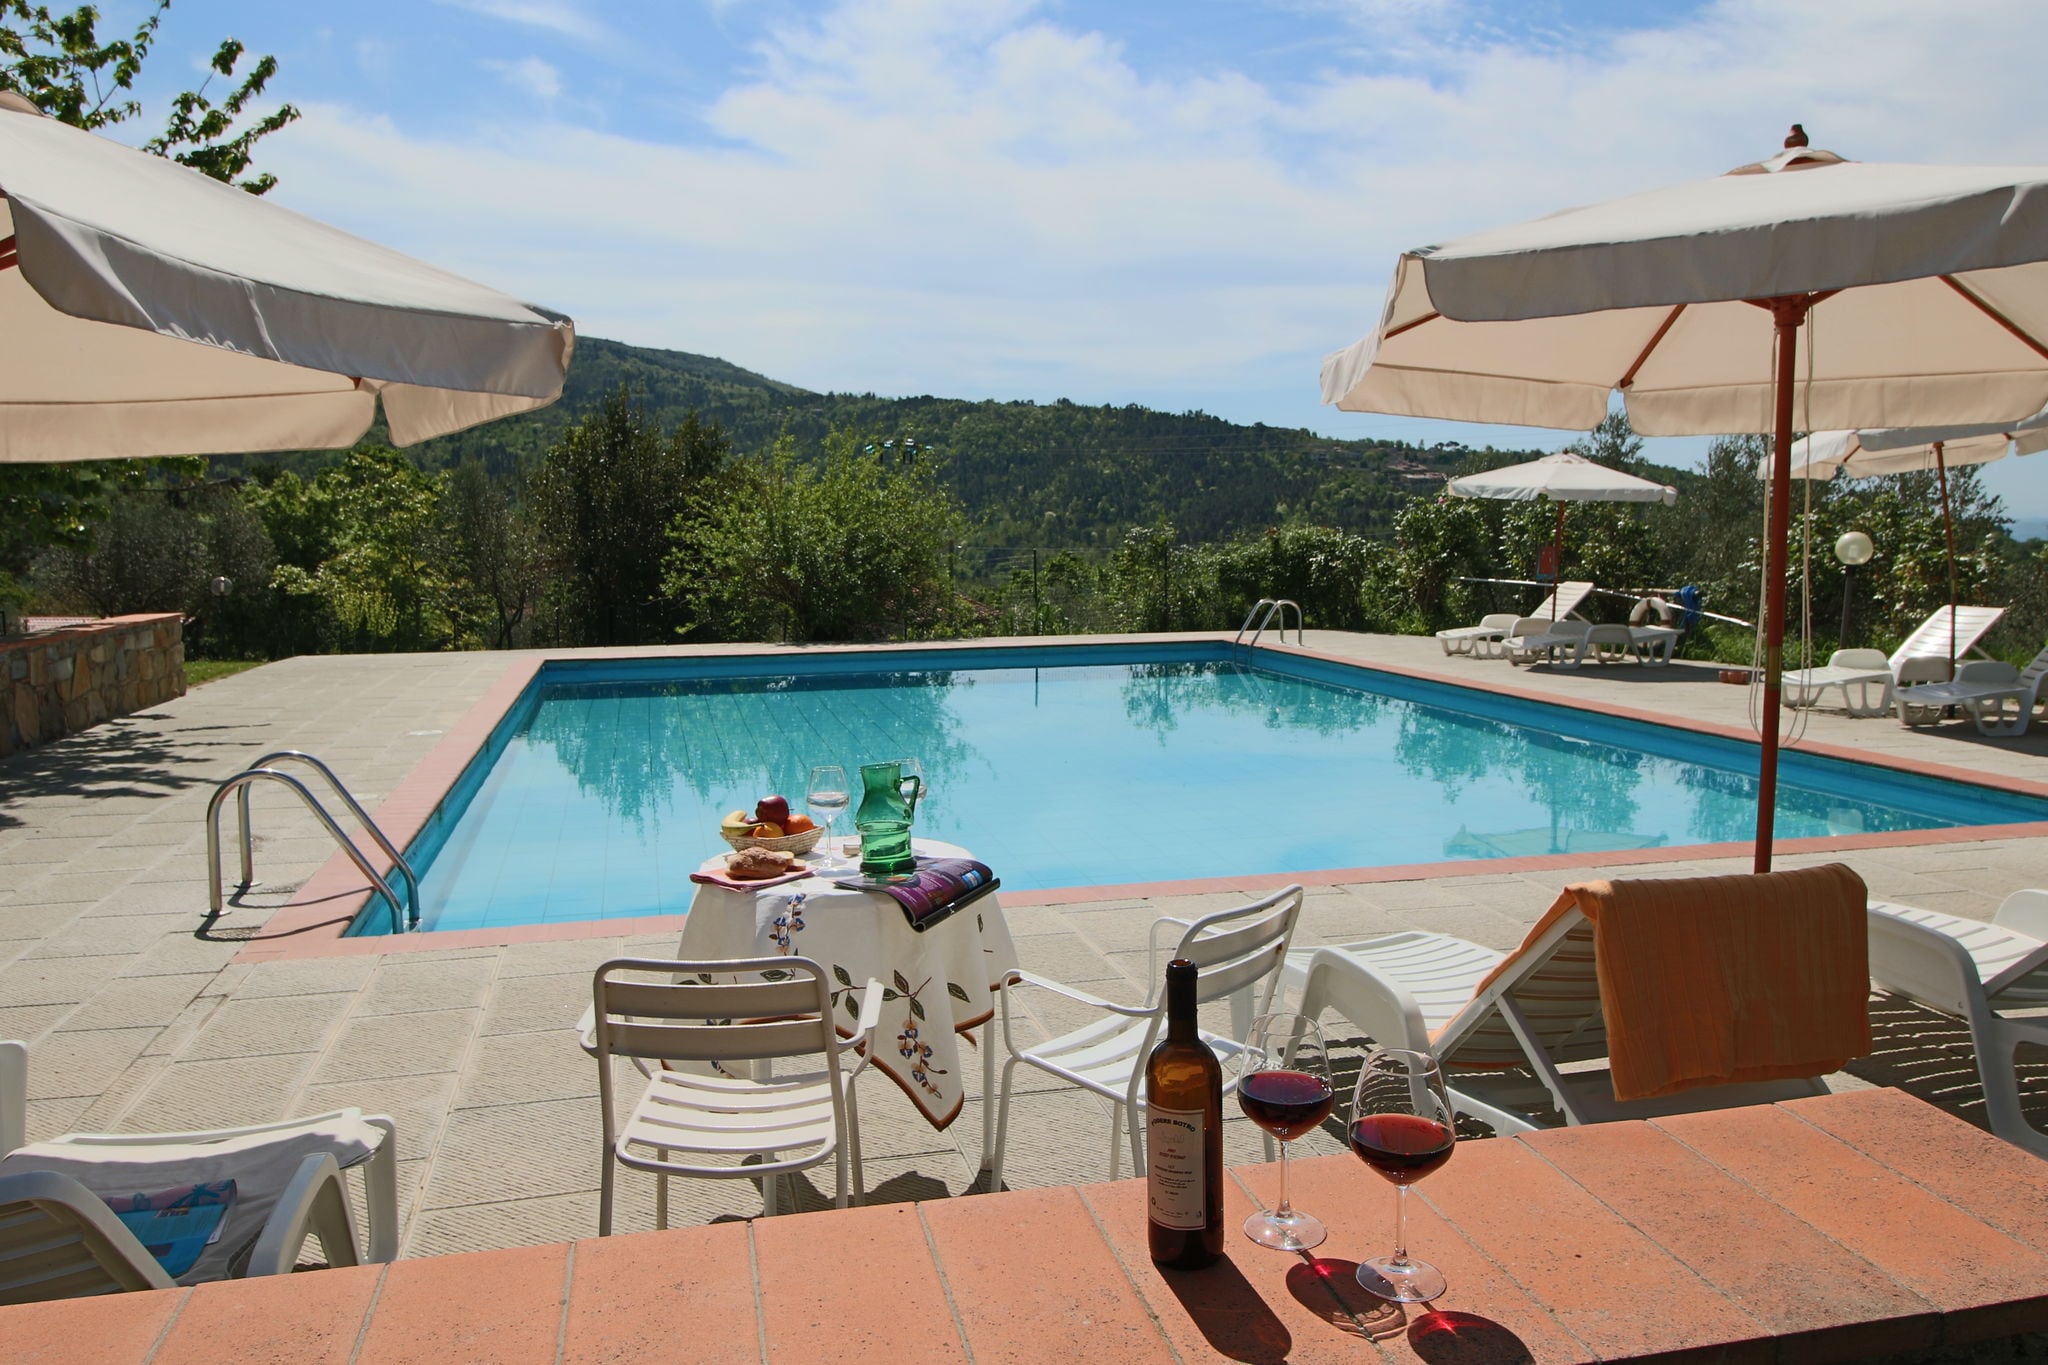 Landelijke agritoerisme met panoramisch zwembad omgeven door wijngaarden